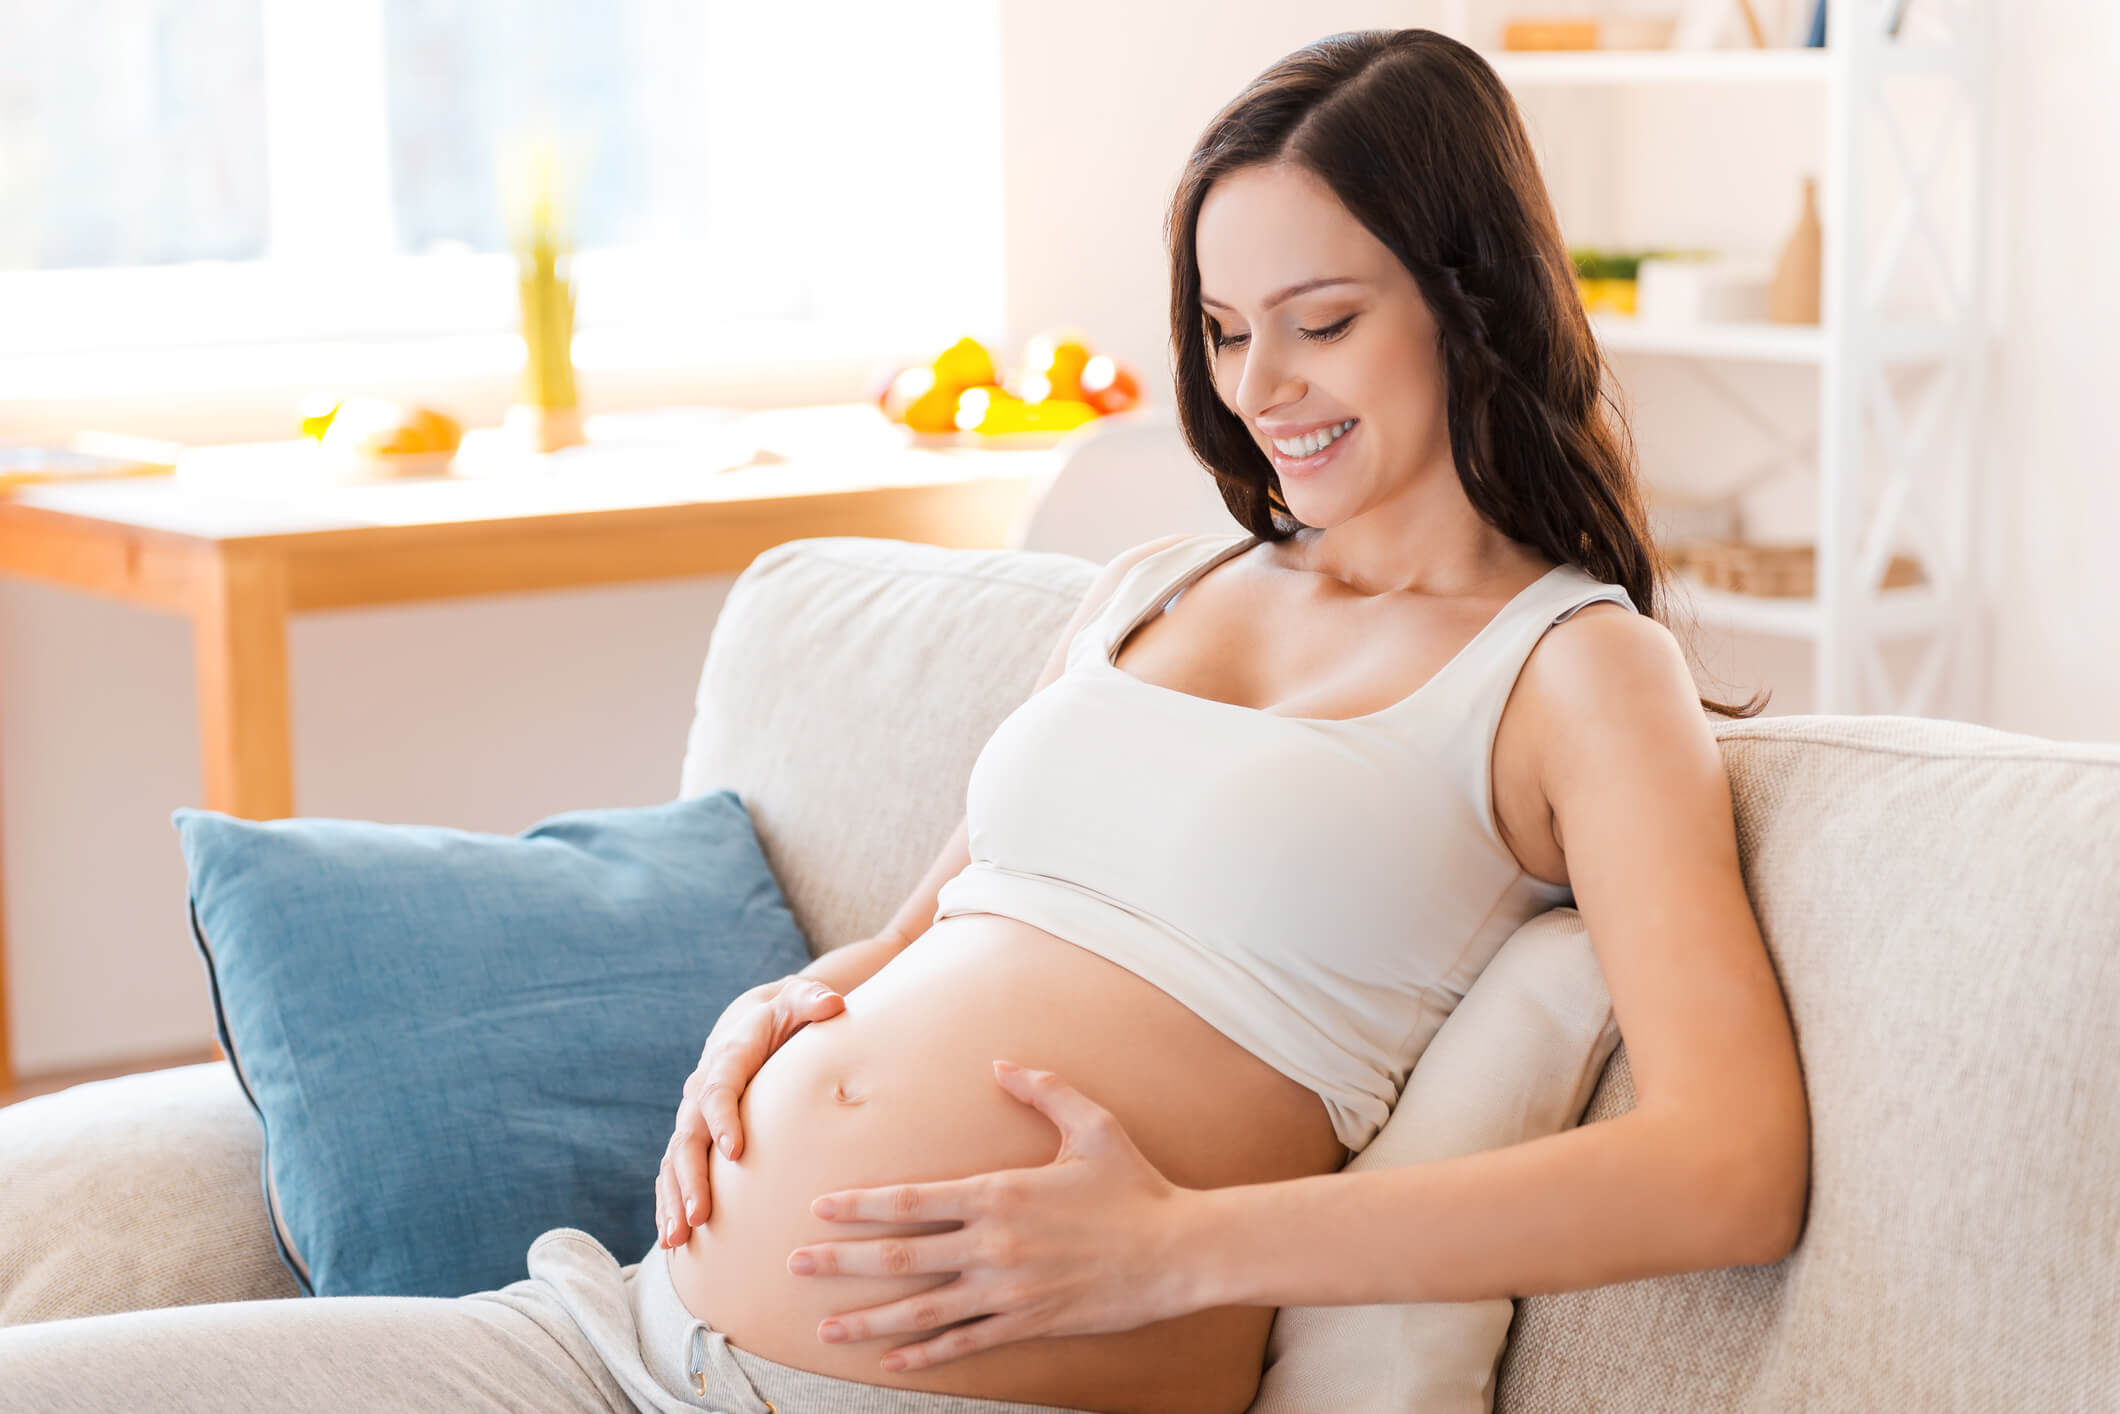 El primer trimestre del embarazo puede pasar algo rápido para algunas mujeres